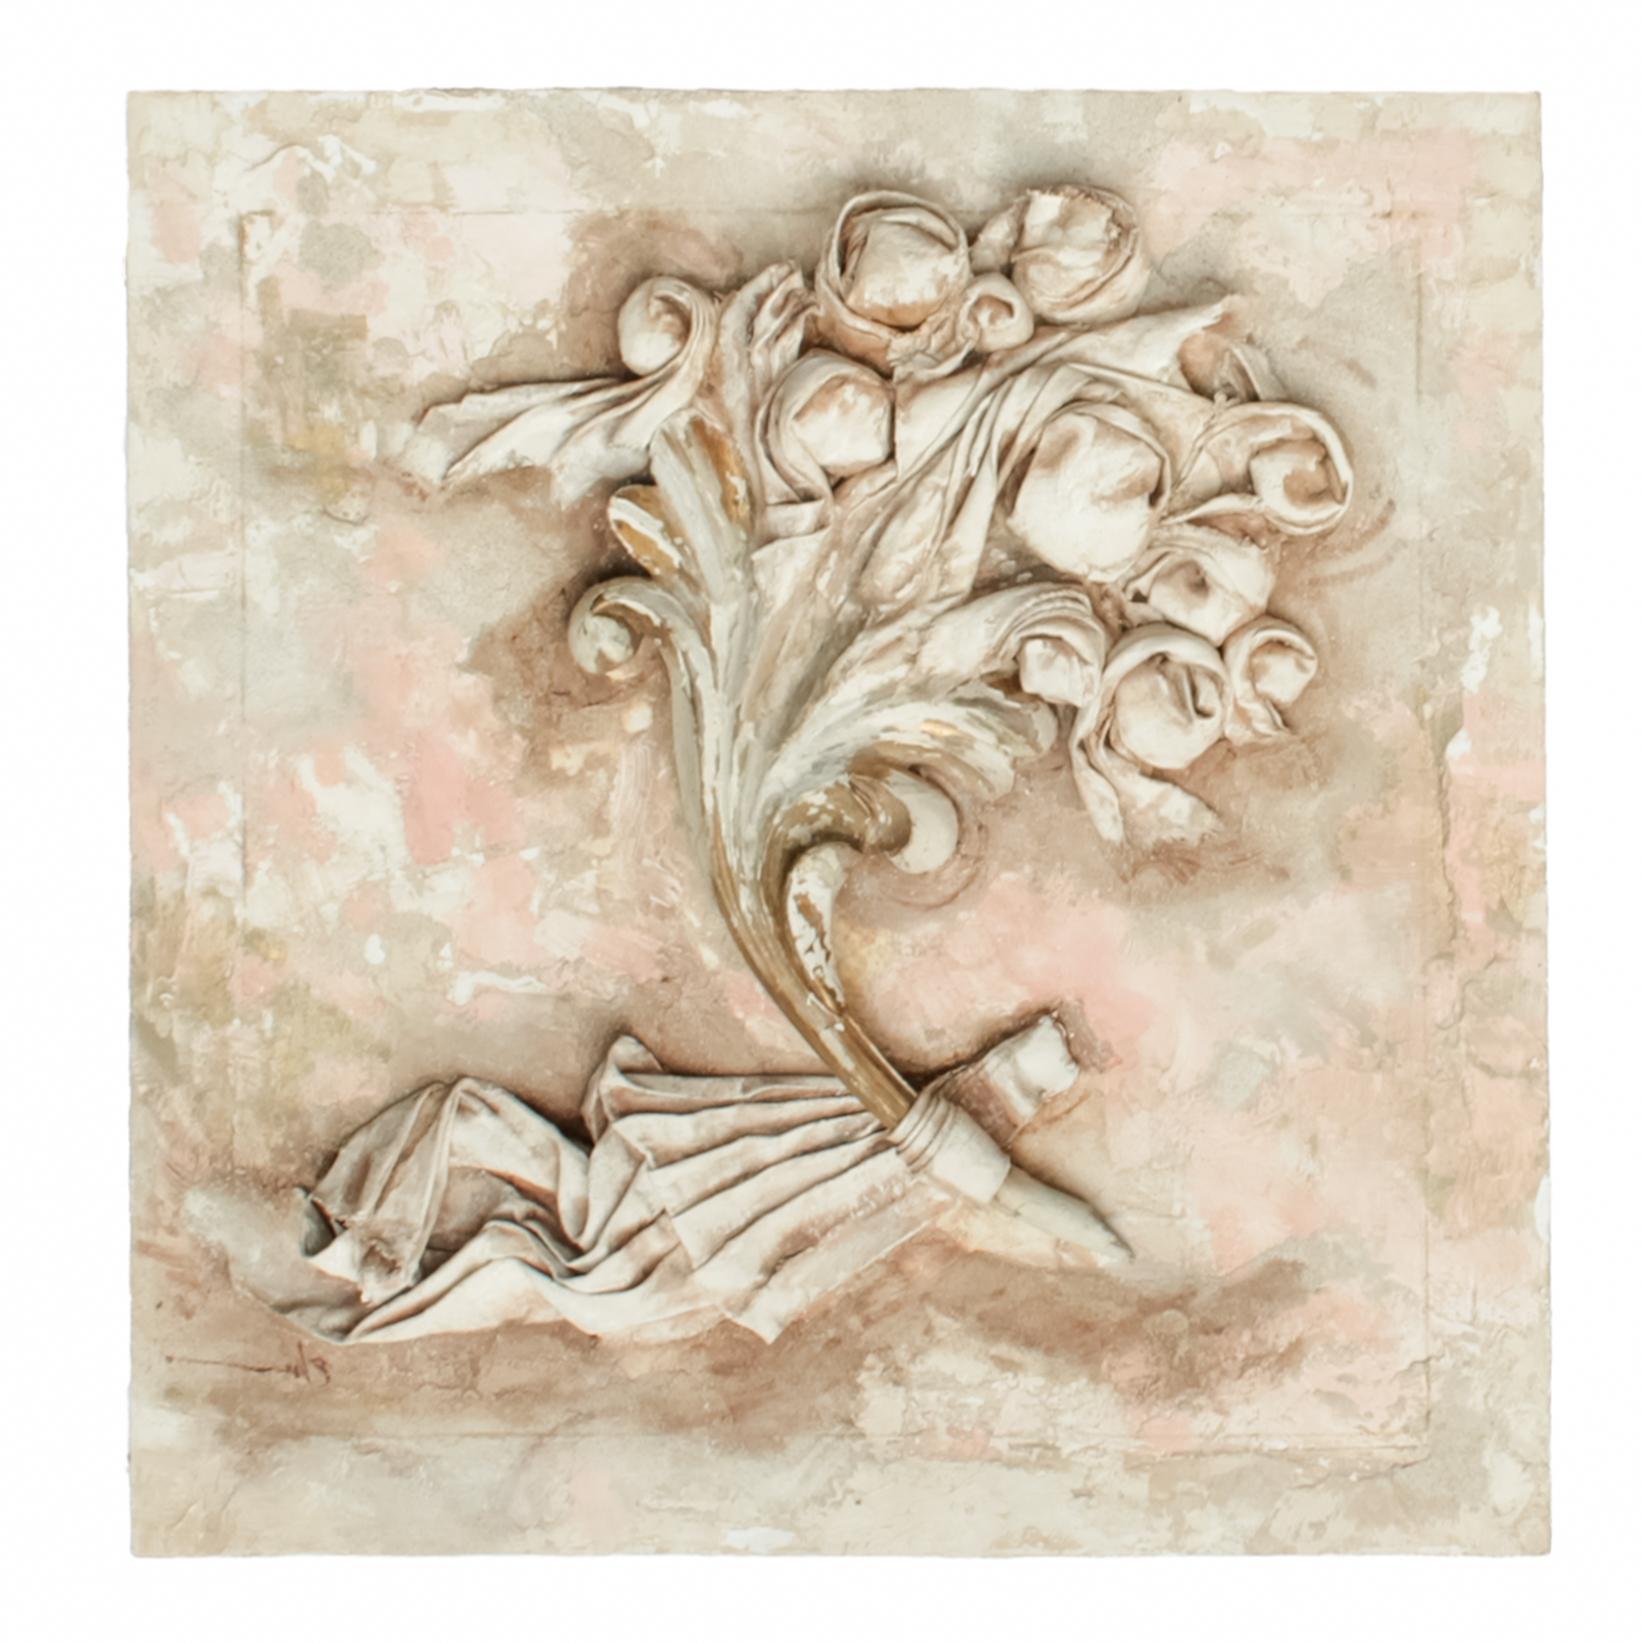 Une paire de fragments assortis de feuilles d'or italiennes du XVIIIe siècle, avec des fleurs sculptées en toile de lin, du plâtre, des huiles, de la cire, des cendres sur bois, du mica et des huiles roses de terre cuite.

Les fragments italiens